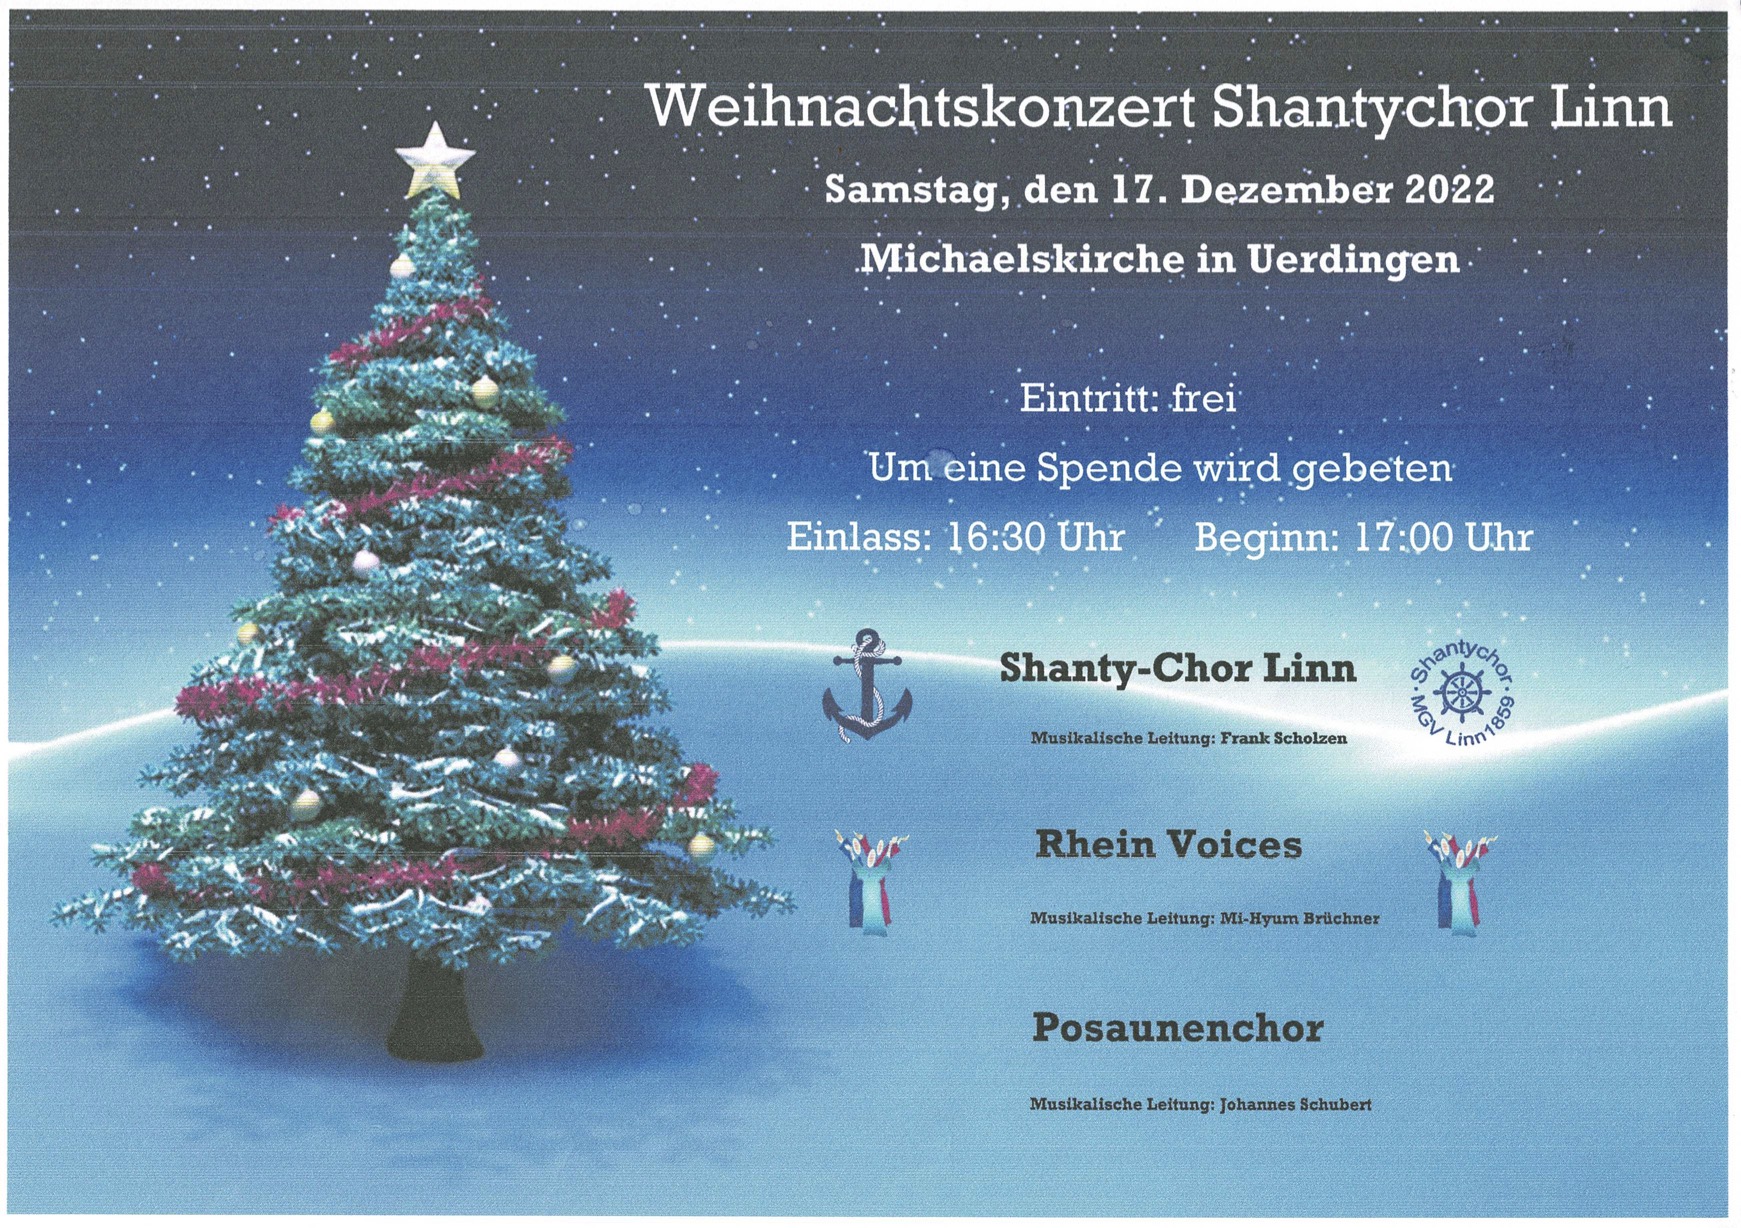 Weihnachtskozert Shantychor Linn Michaelskirche (c) Shantychor Linn